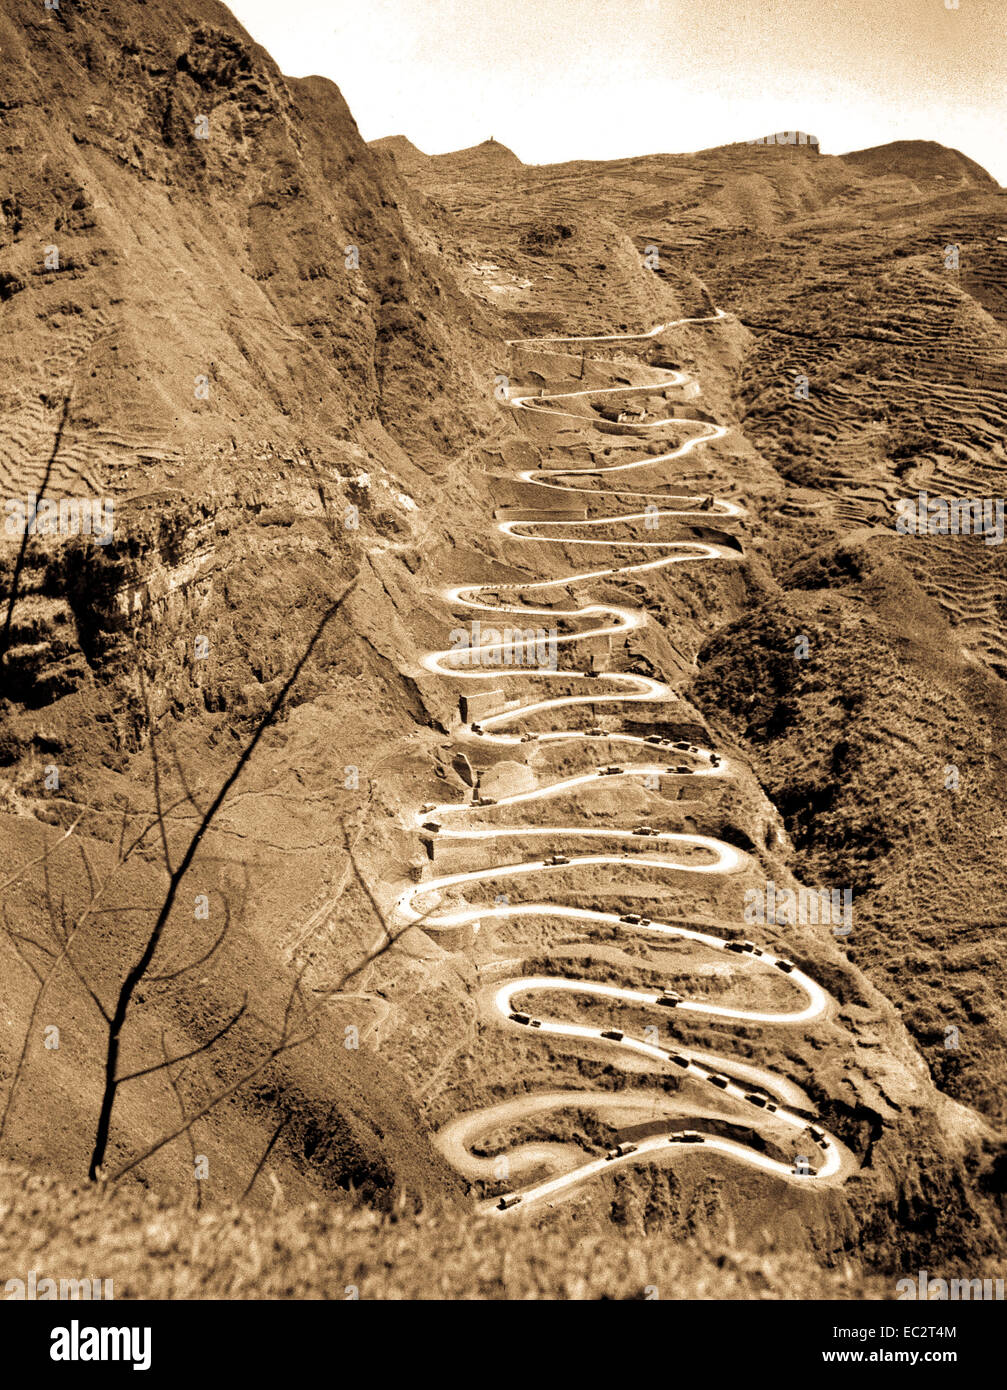 US-Konvoi betreibt zwischen Chen-Yi und Kweiyang, China, ist die berühmte 21 Kurven an Annan, China aufsteigend.  26. März 1945.  PFC John F. Albert.  (Armee) Stockfoto